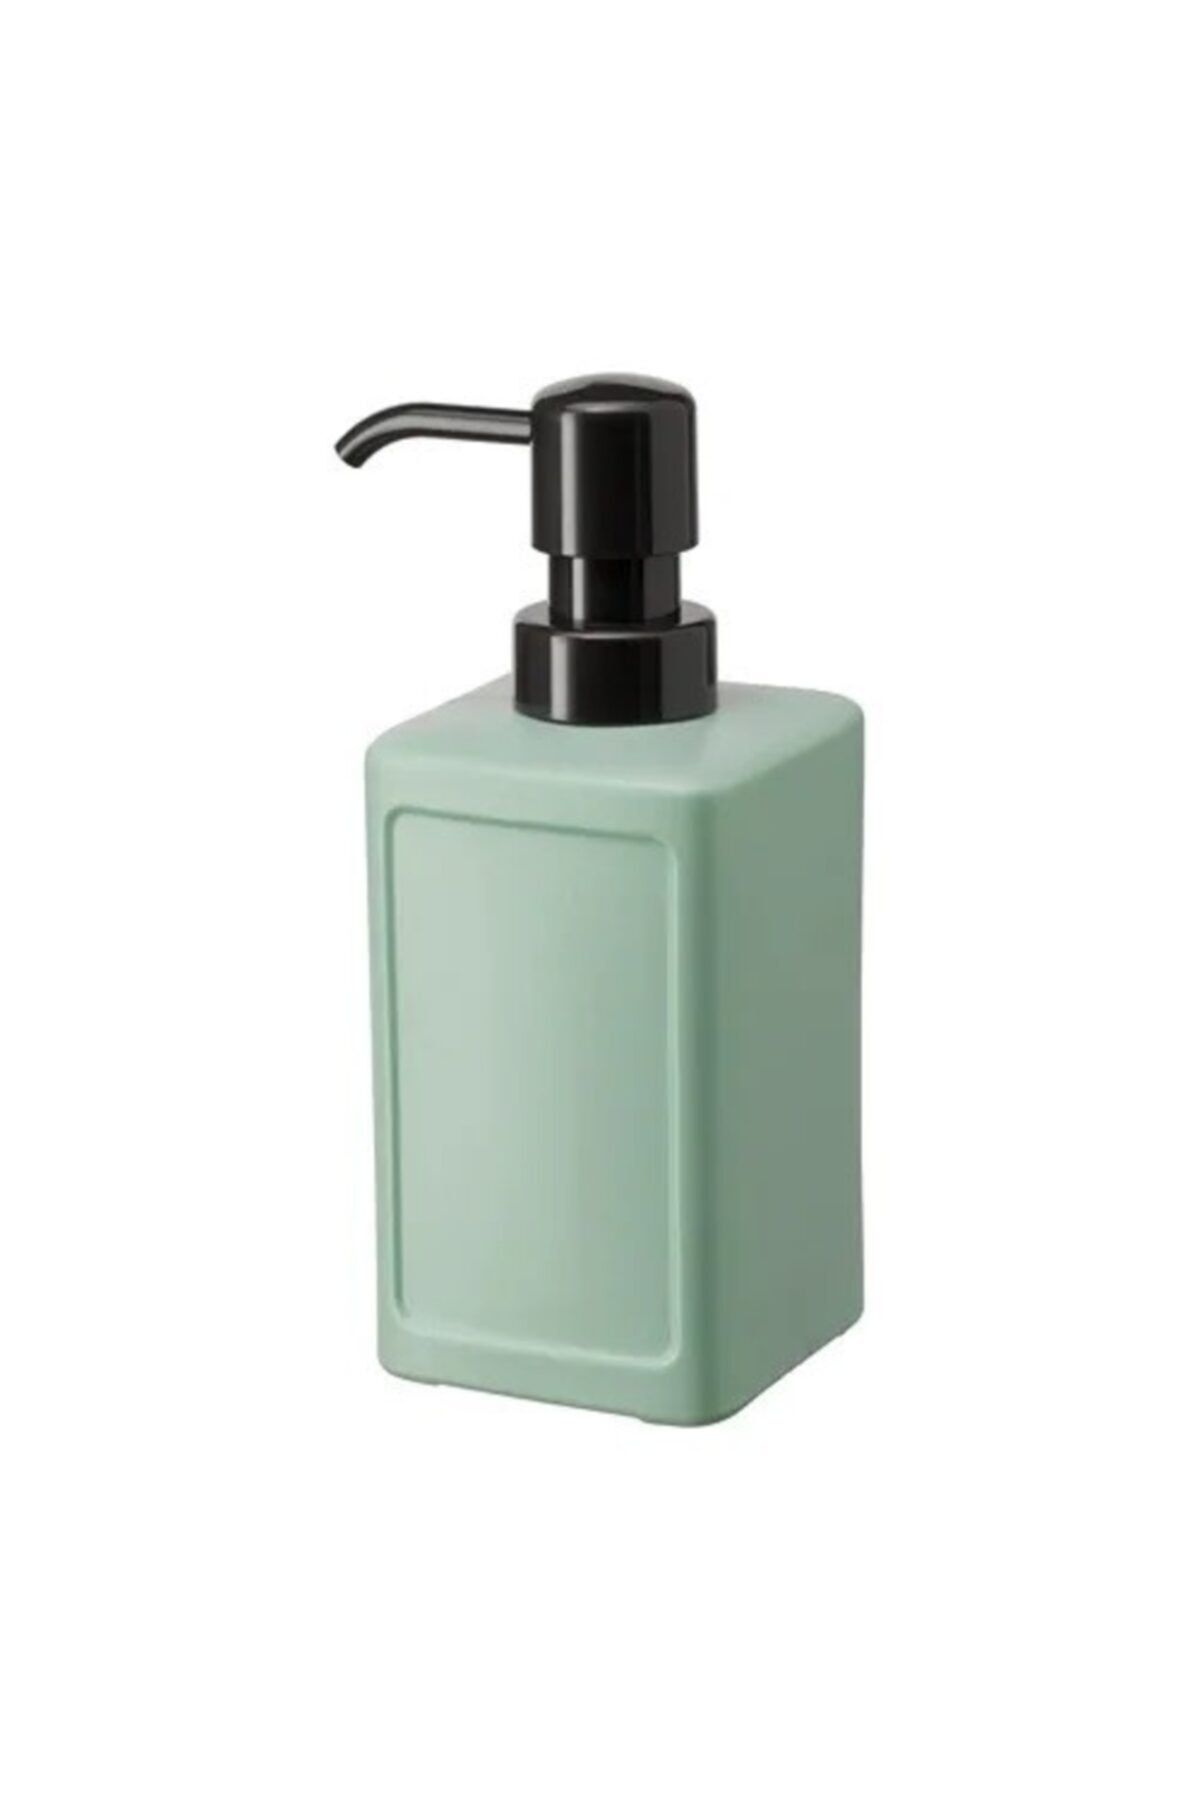 BARBUN Rınnıg Sıvı Sabunluk - Plastik - Yeşil